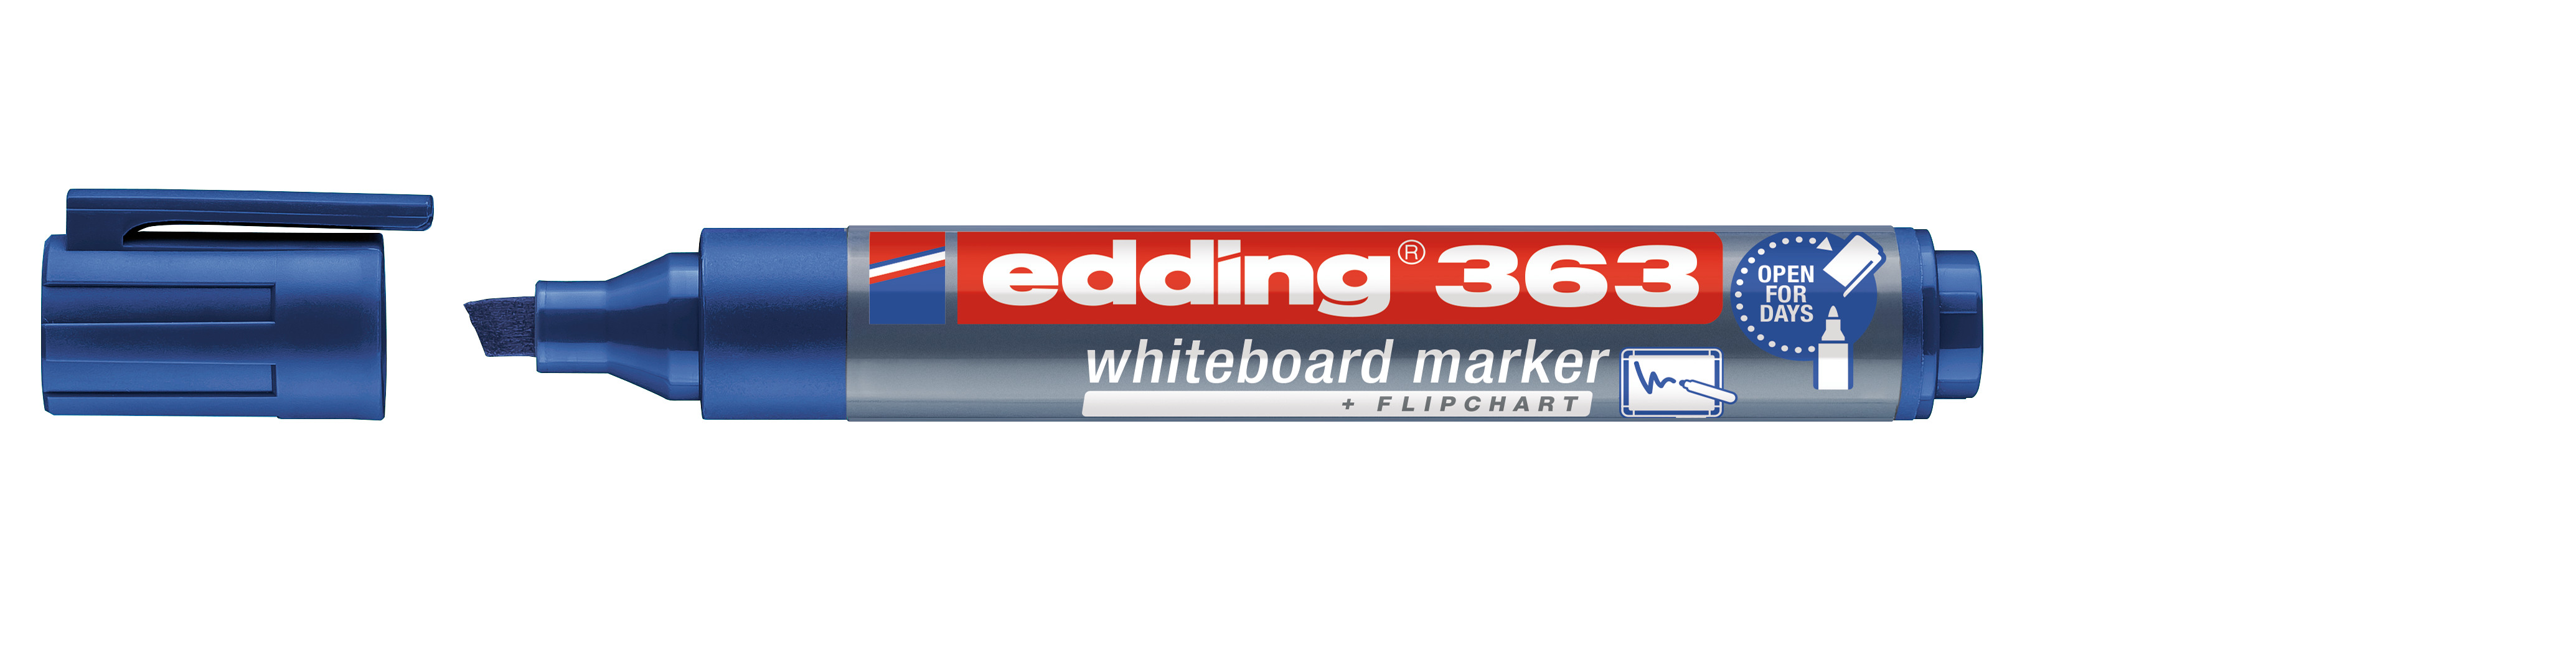 EDDING Whiteboard Marker 363 1-5mm 363-003 bleu